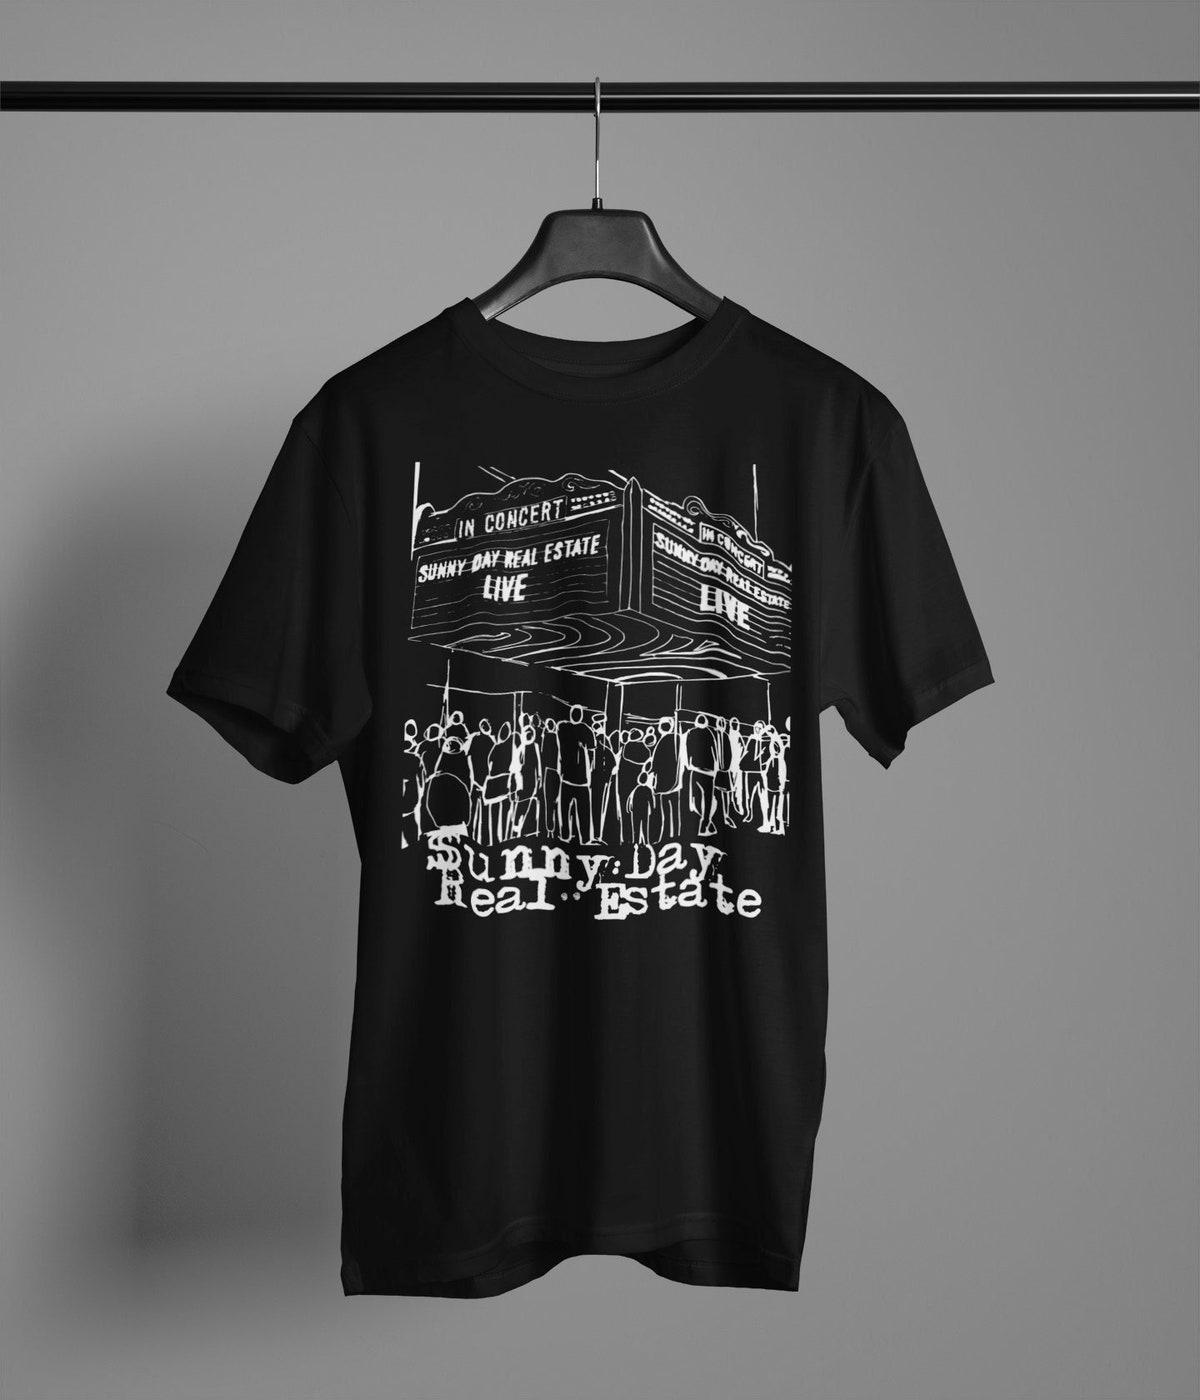 American Rock Band Sleater-kinney Kitten T-shirt Gift For Fans